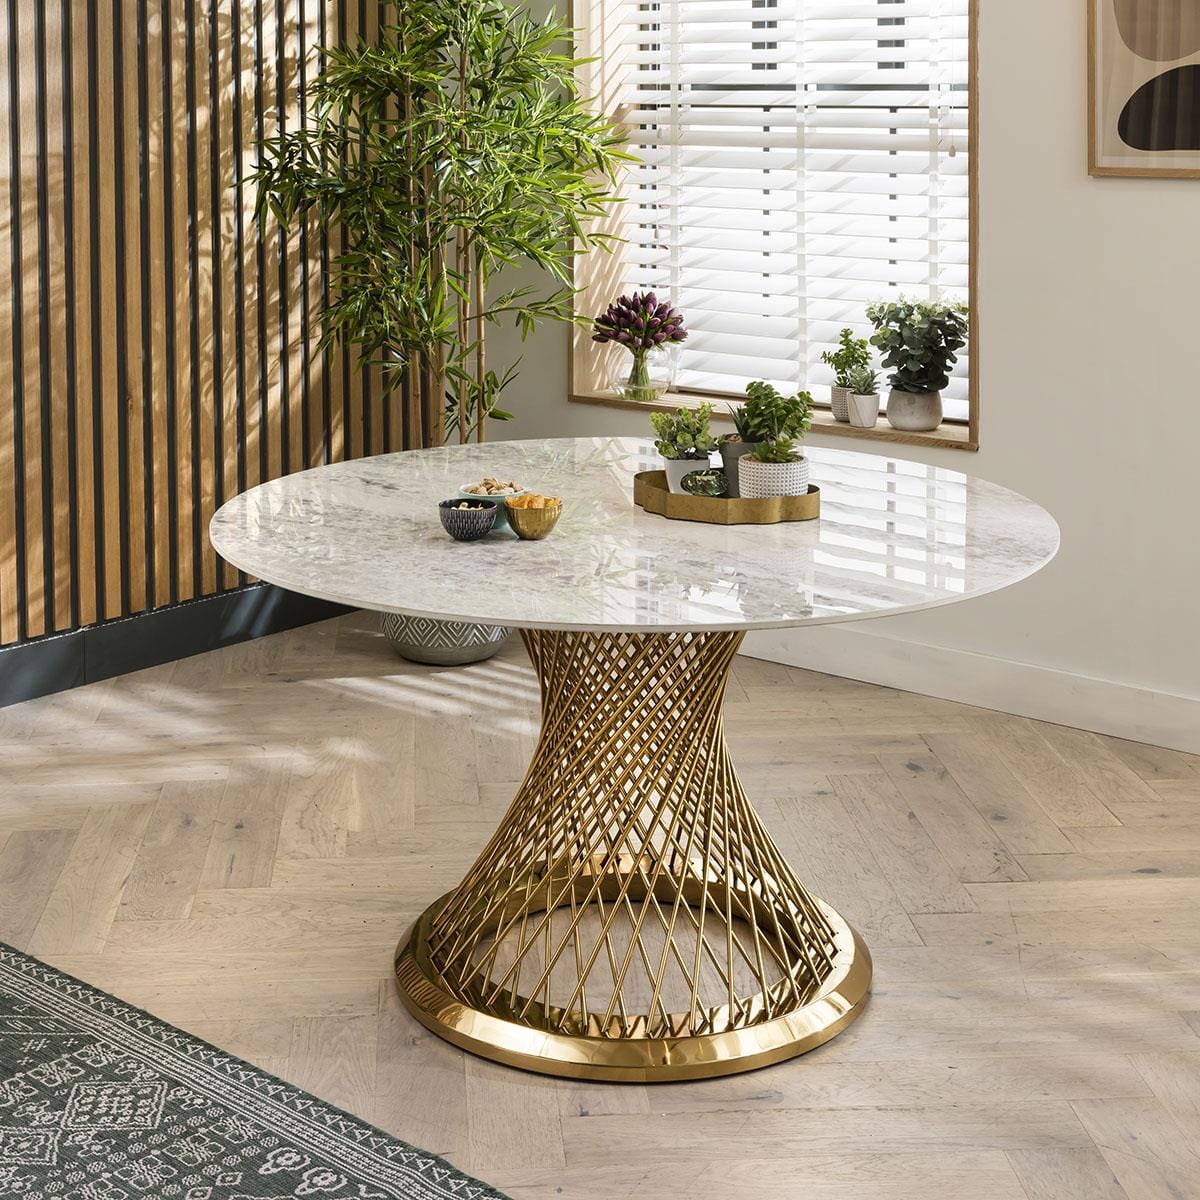 Quatropi Sunburst Ceramic Dining Table - White 135cm